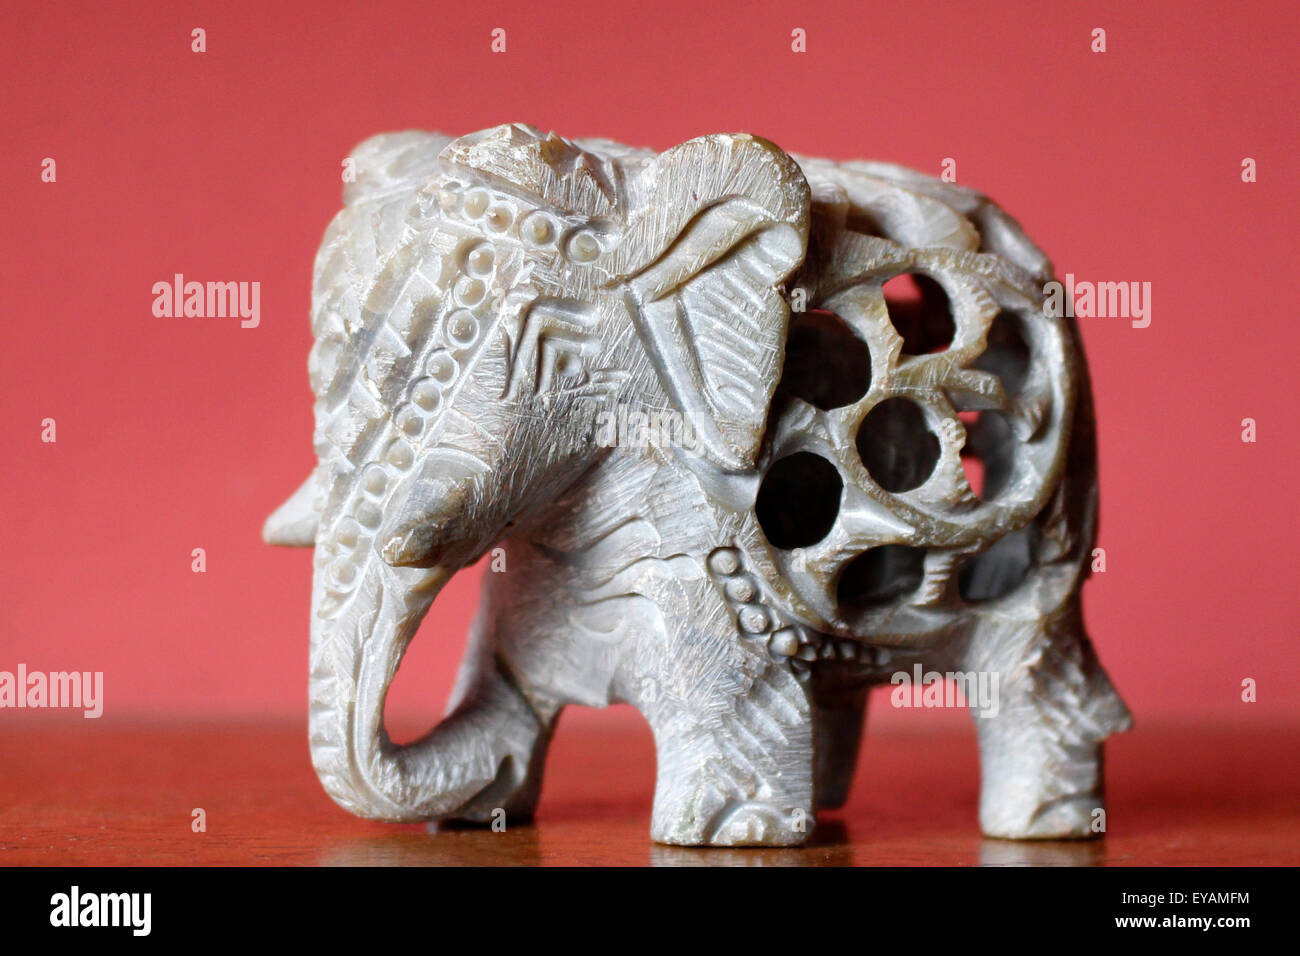 Baby-Elefant in einem Elefanten-Figur aus einem einzigen Stein. Thailändische Ornament. Stockfoto